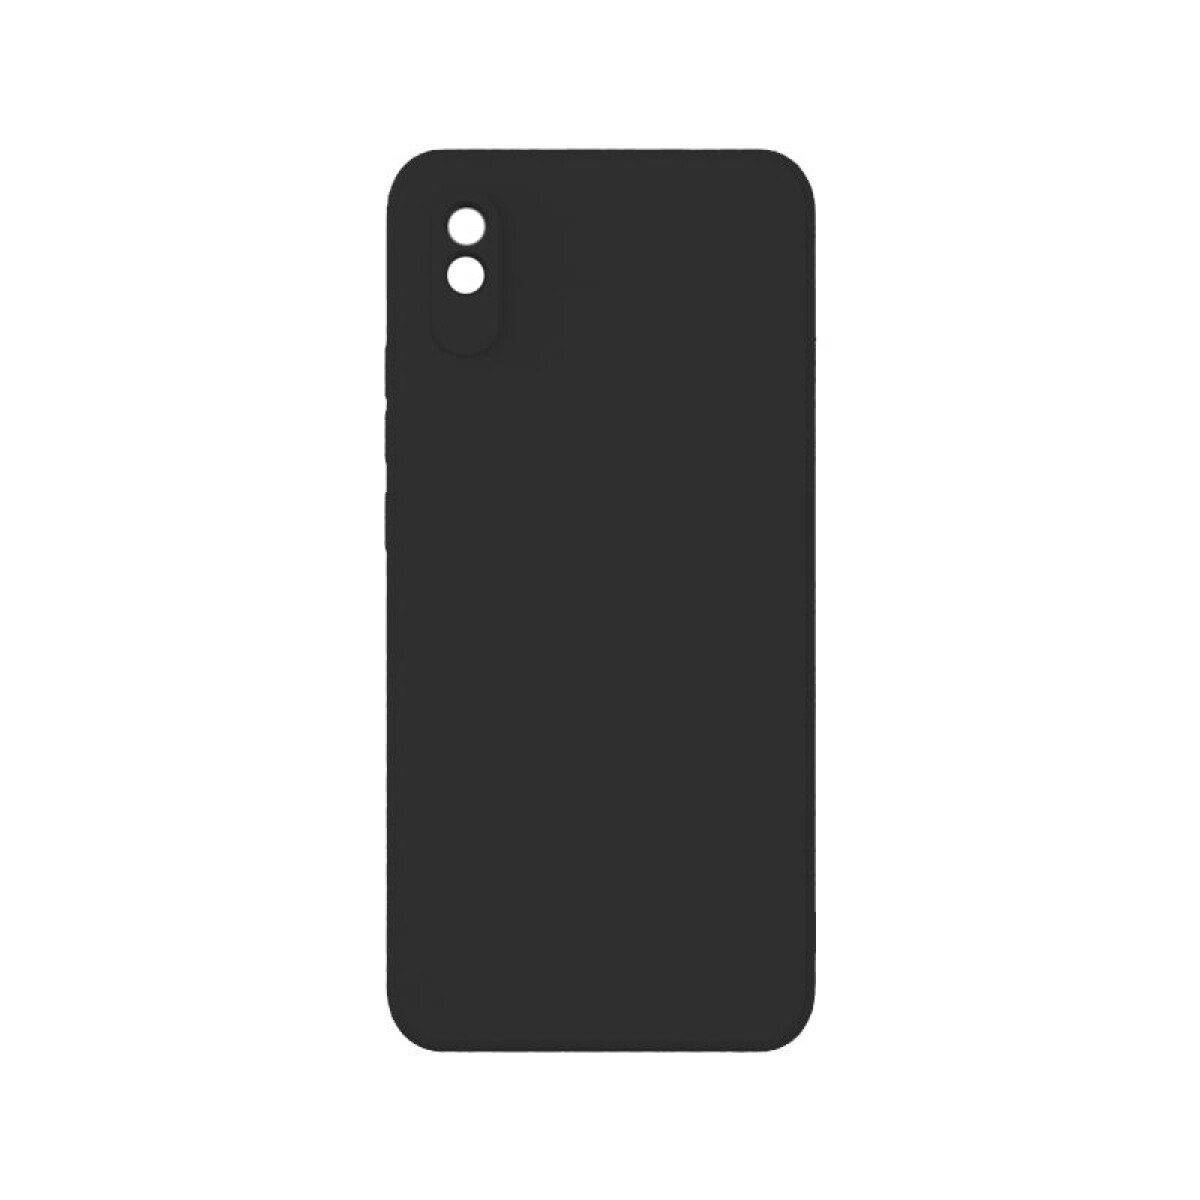 Protector Case de Silicona para Xiaomi Redmi 9A - Negro 